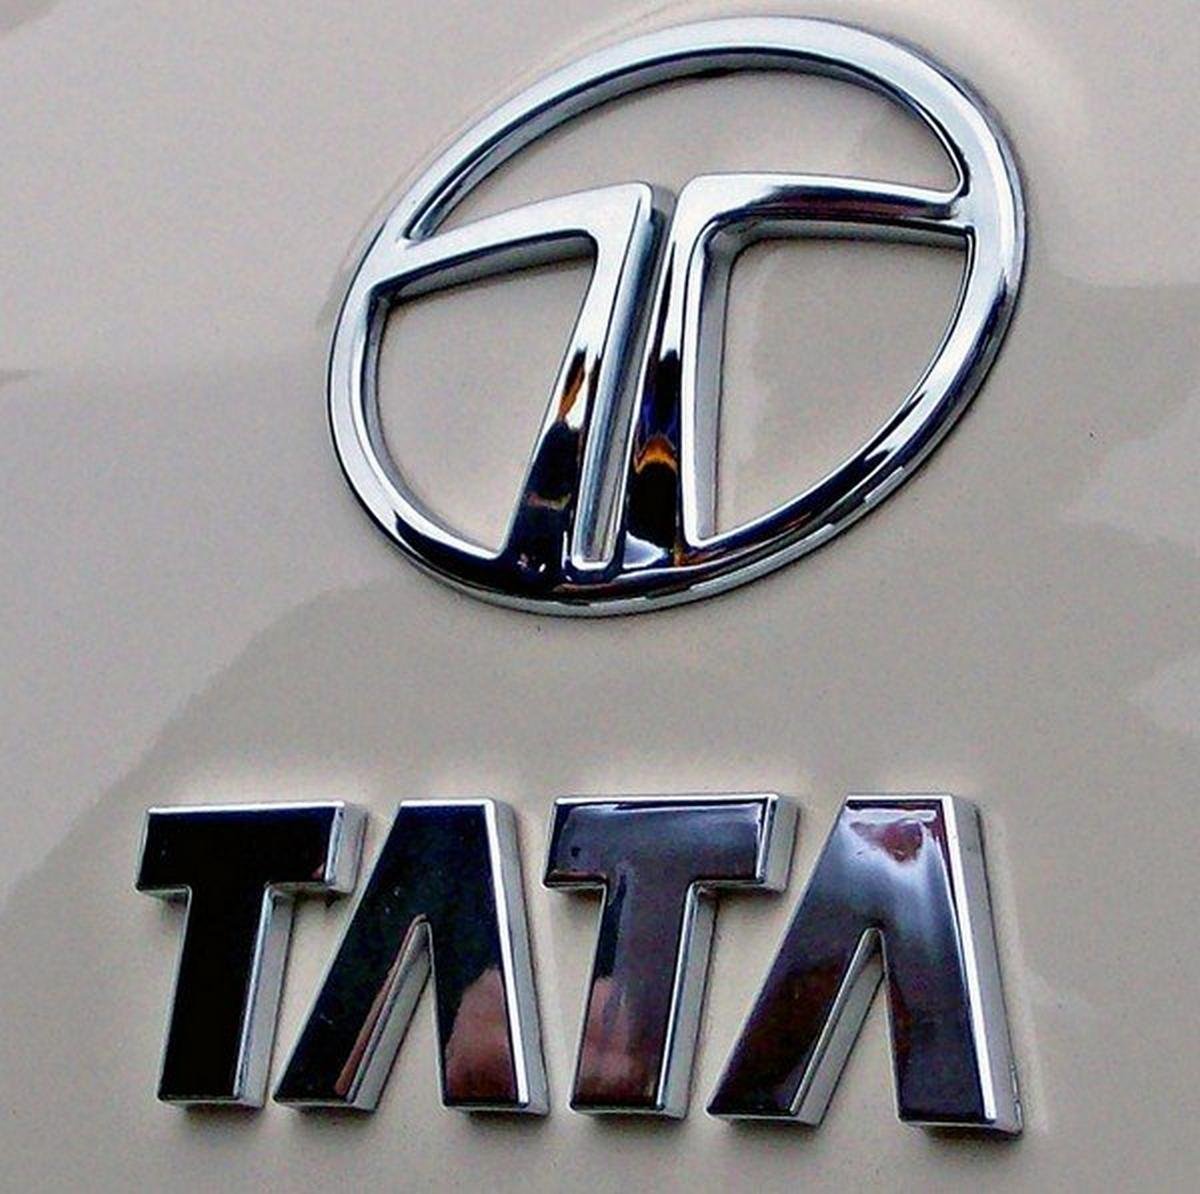 कार खरीदना बनेगा फूड ऑर्डर करने जितना आसान, Tata करने जा रही ये बड़ा धमाका